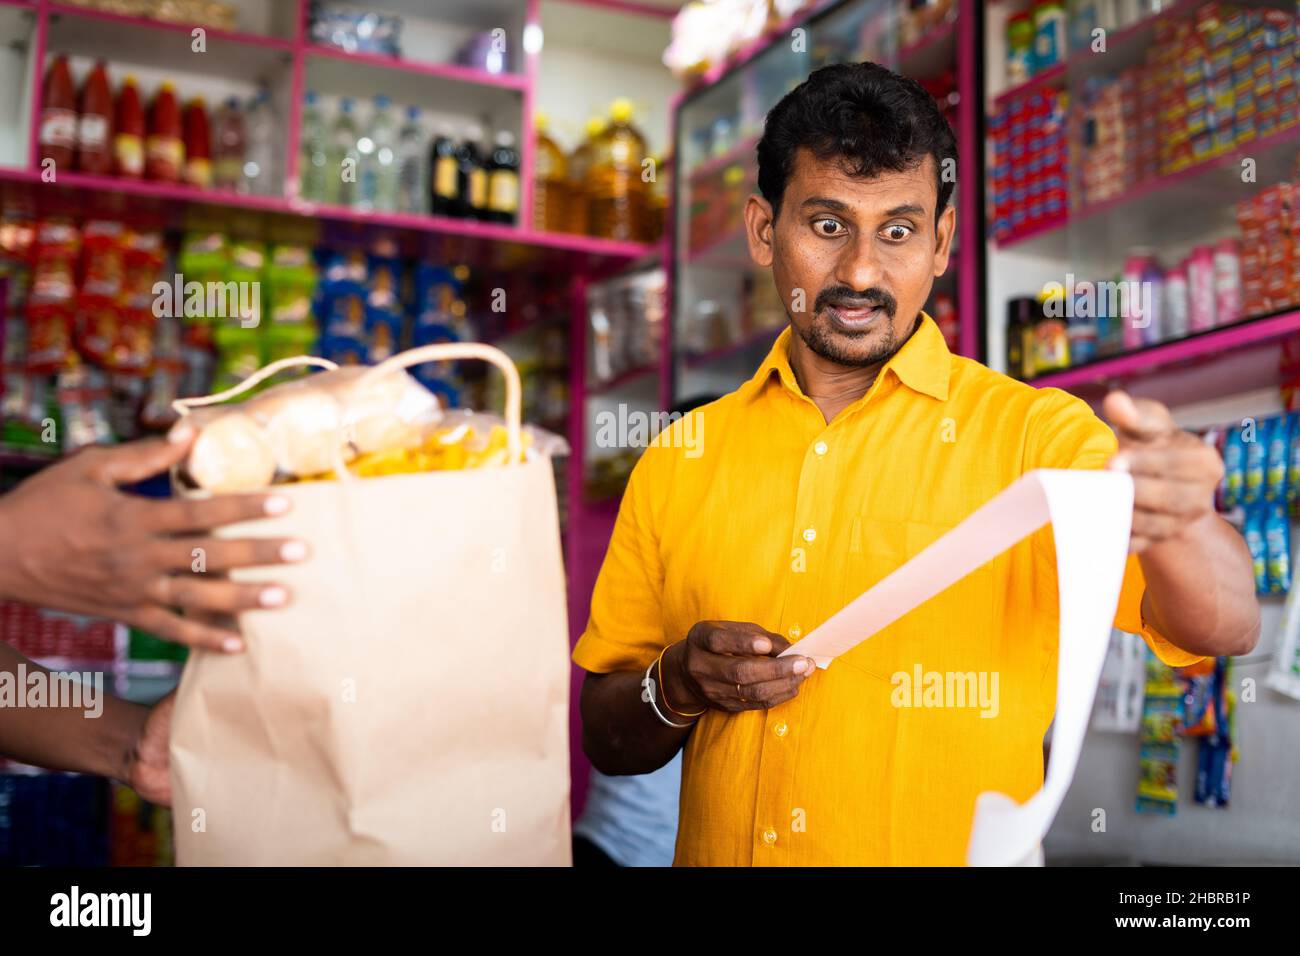 Schockierte Kunden in Kirana oder im Lebensmittelgeschäft, nachdem sie den Eingang der Lebensmittelrechnung gesehen hatten - Konzept der Inflation, steigender Preise und Konsumdenken. Stockfoto